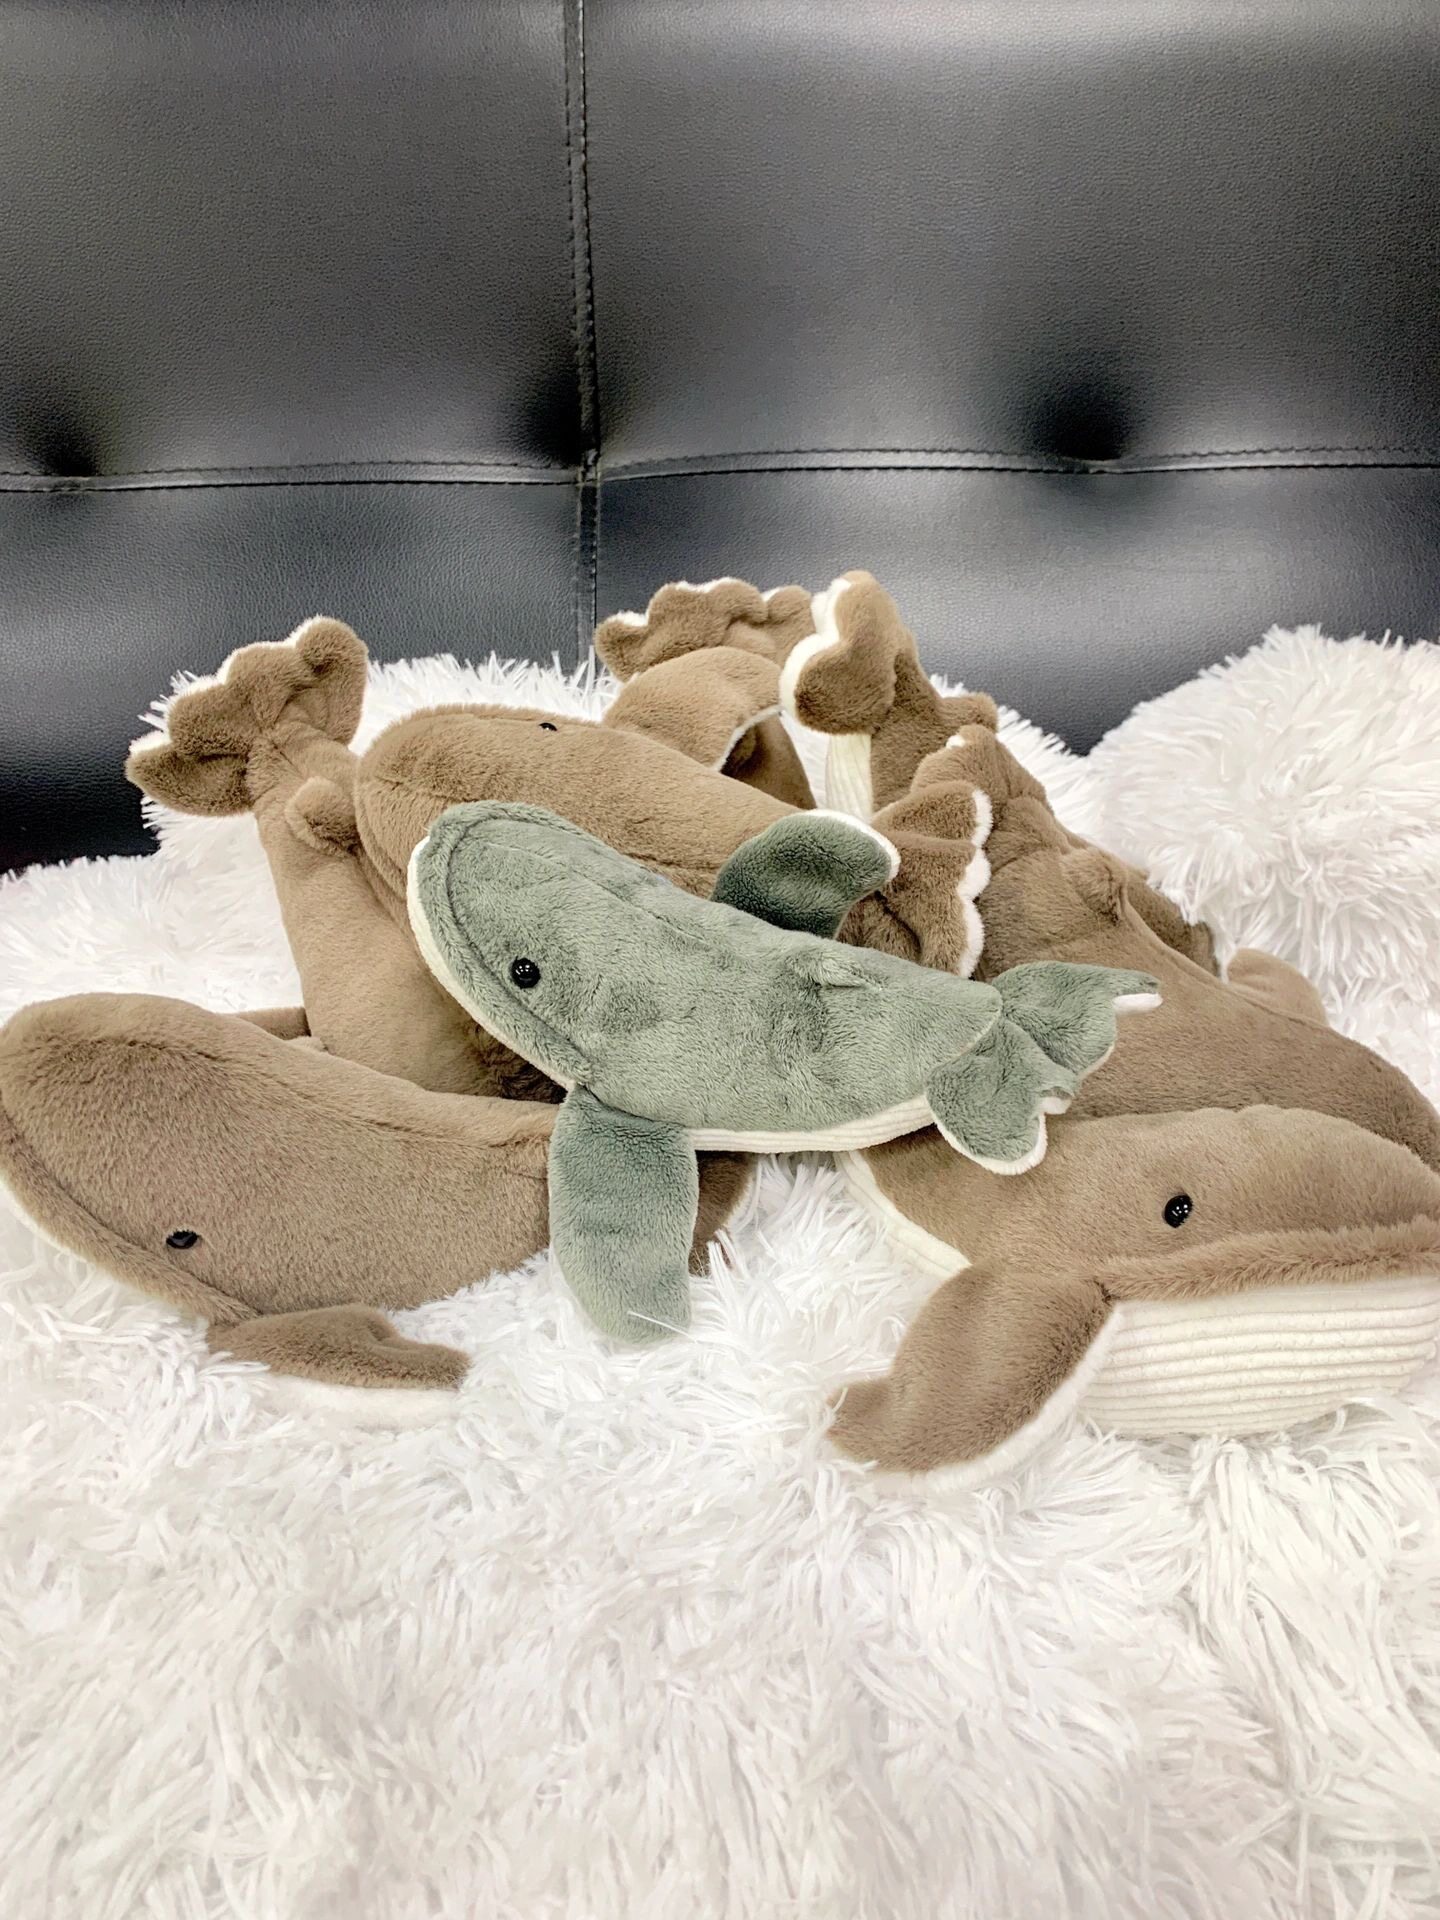 whale plush toys wholesaler, whale plush toys distributor, whale plush toys customize, whale plush toys manufacturer, whale plush toys factory